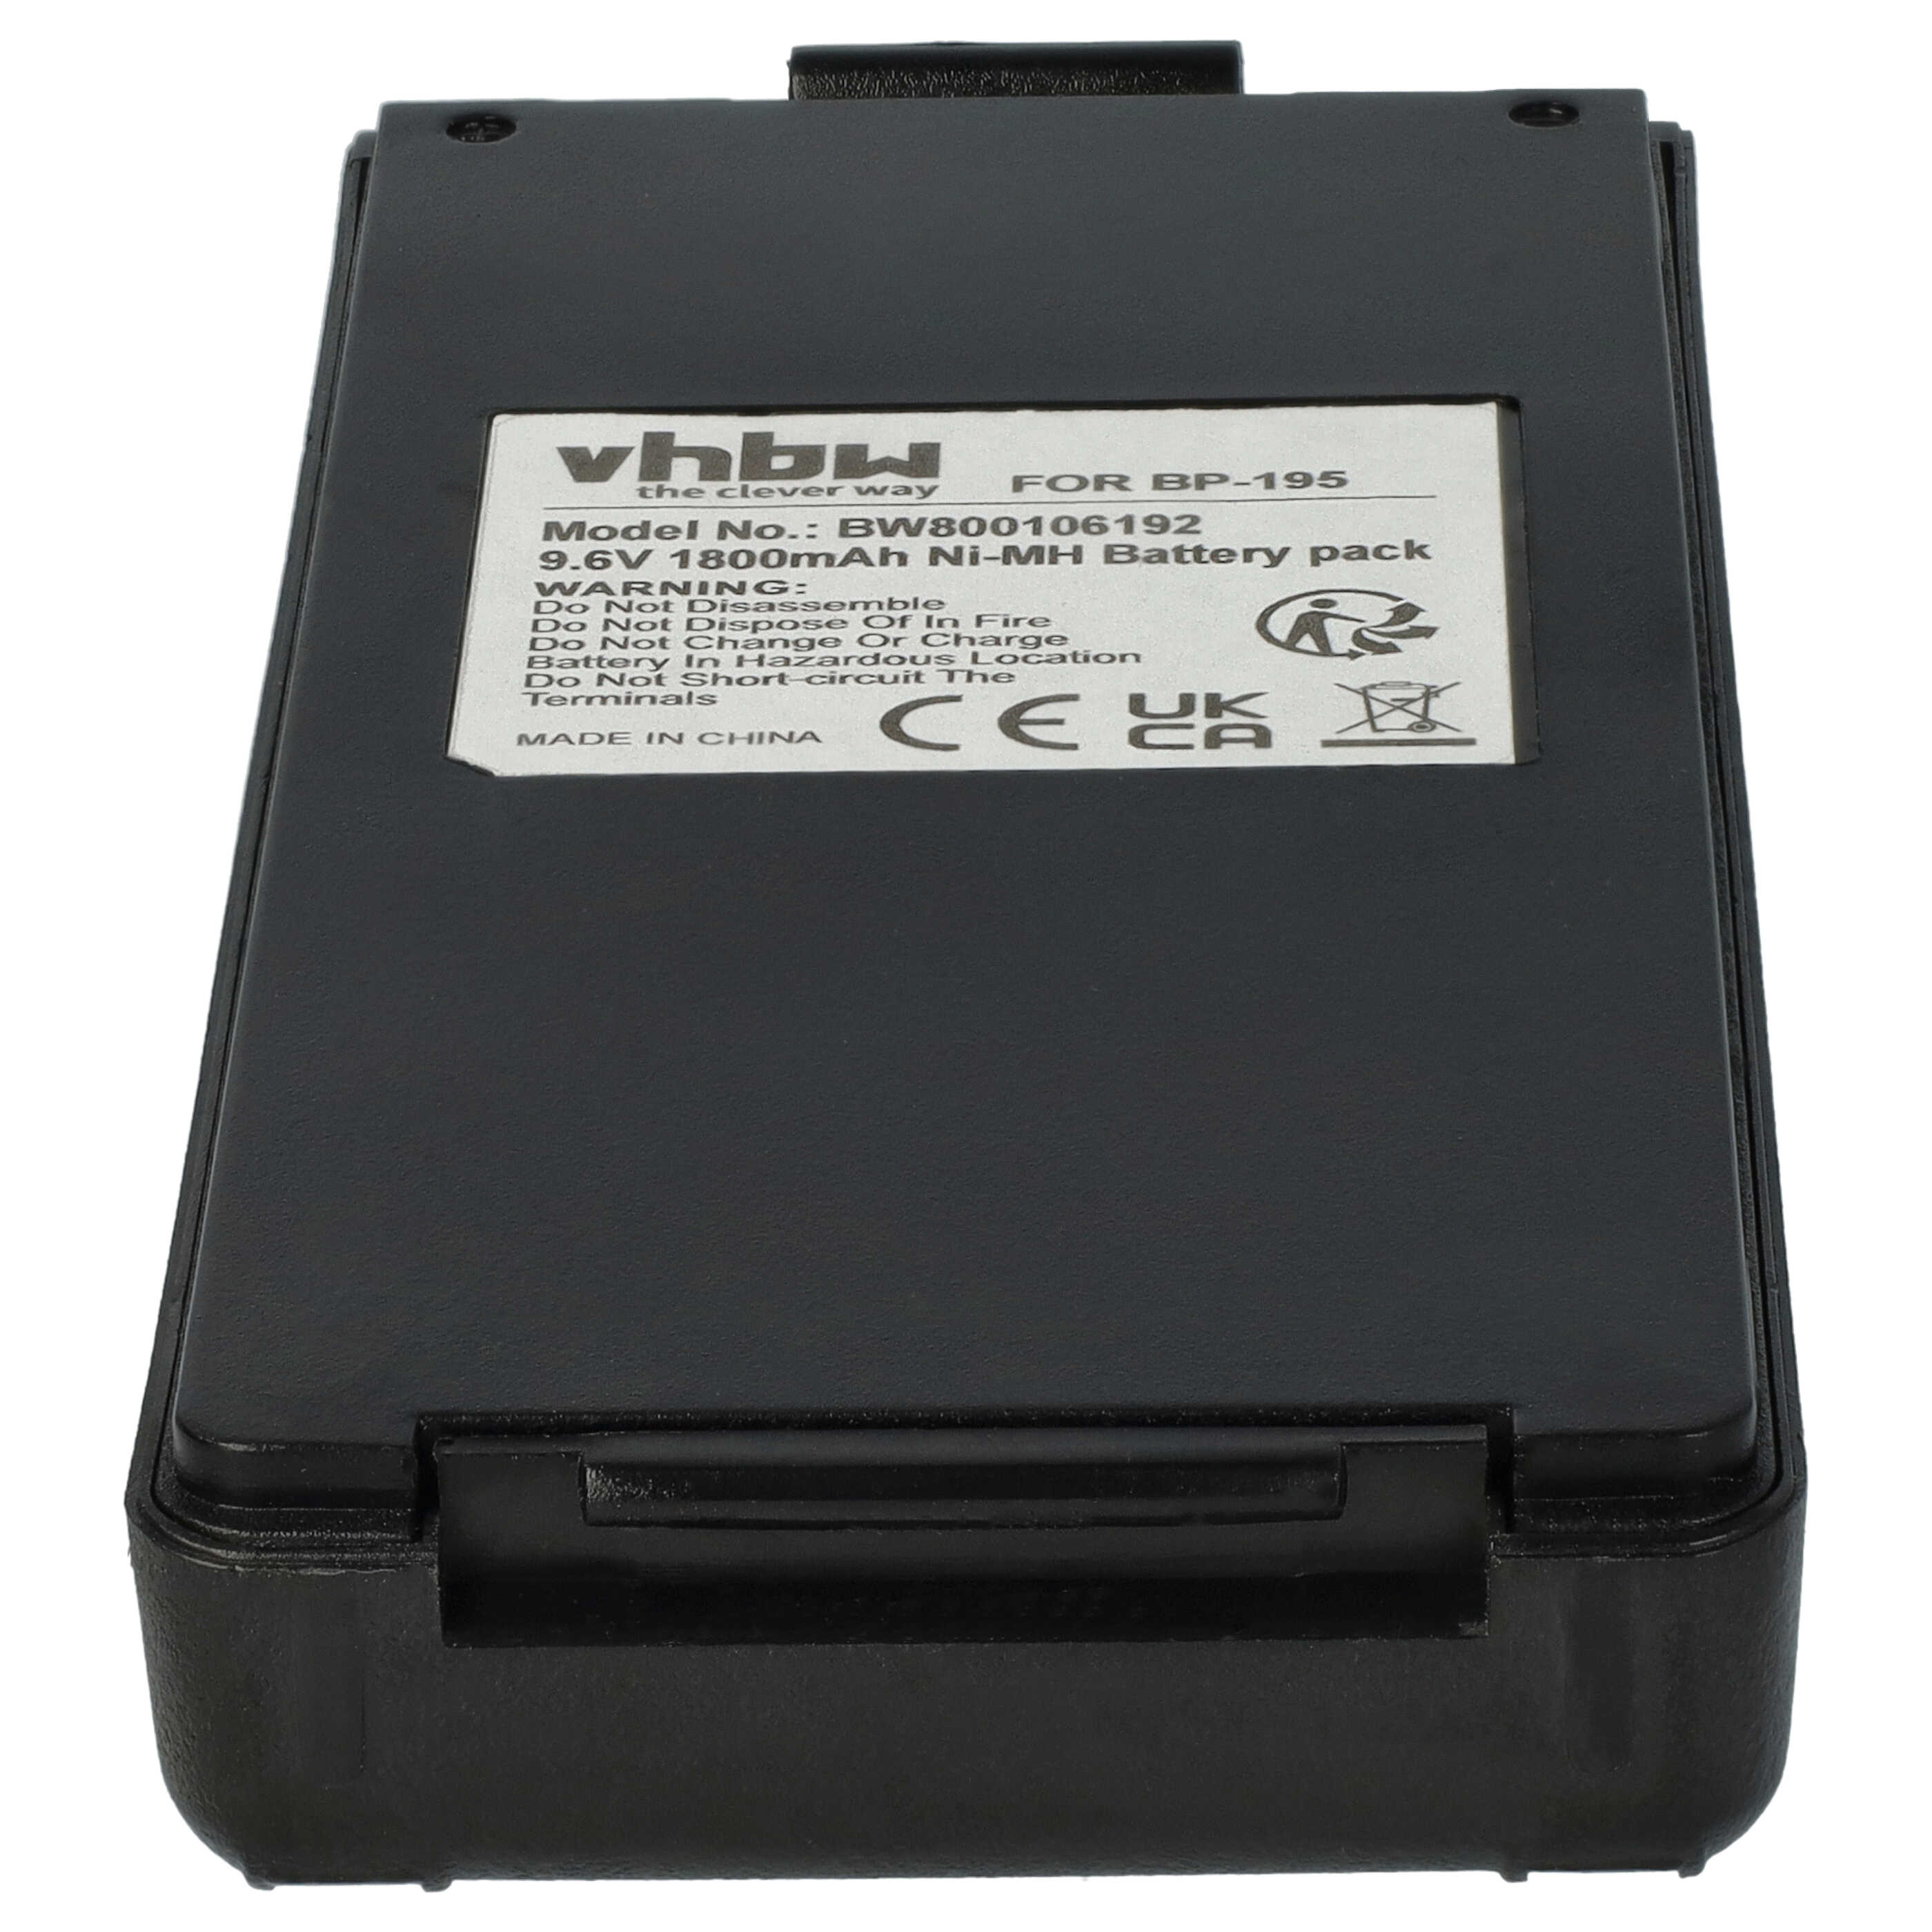 Radio Battery Replacement for Icom BP-195, BP-196H, BP-196, BP-196R - 1800mAh 9.6V NiMH + Belt Clip